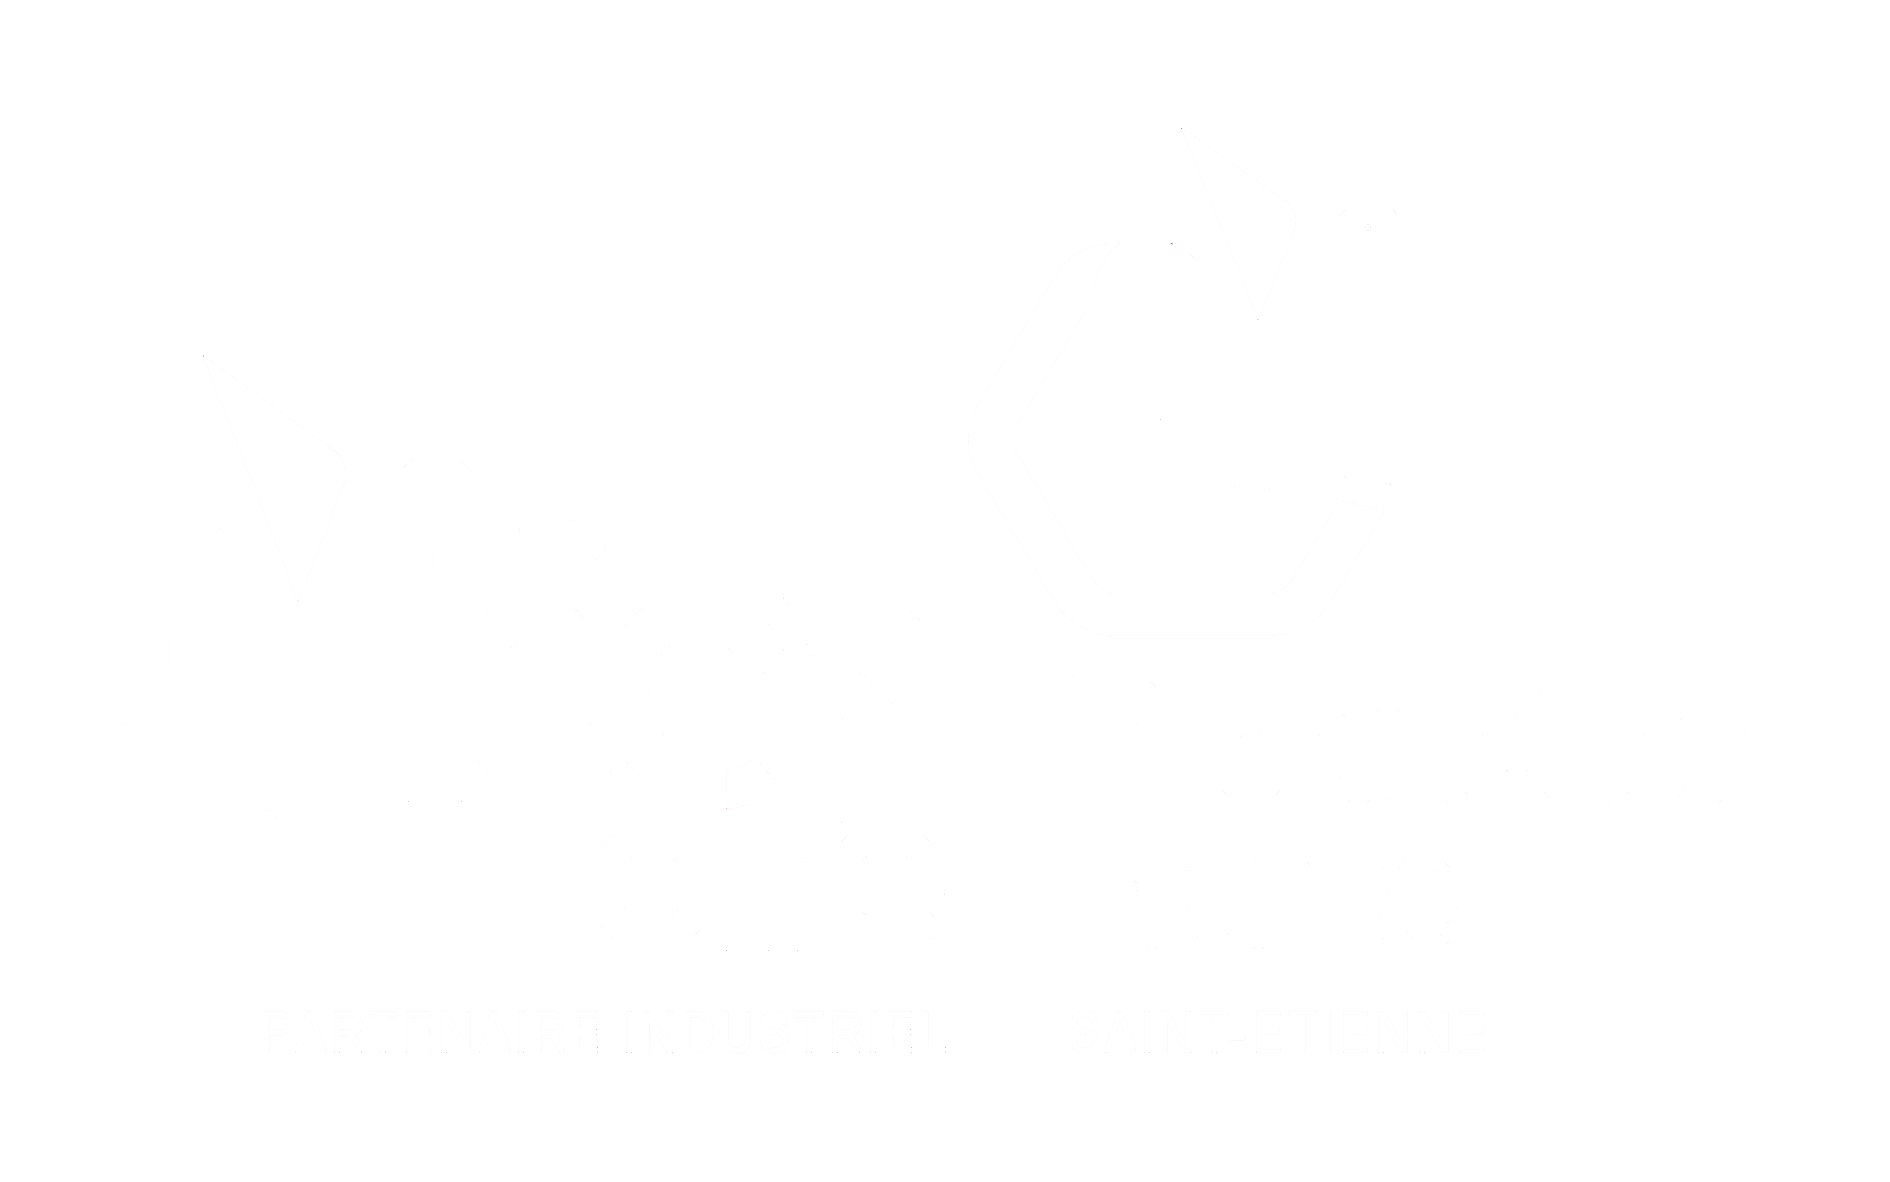 Mécaloire - Production France